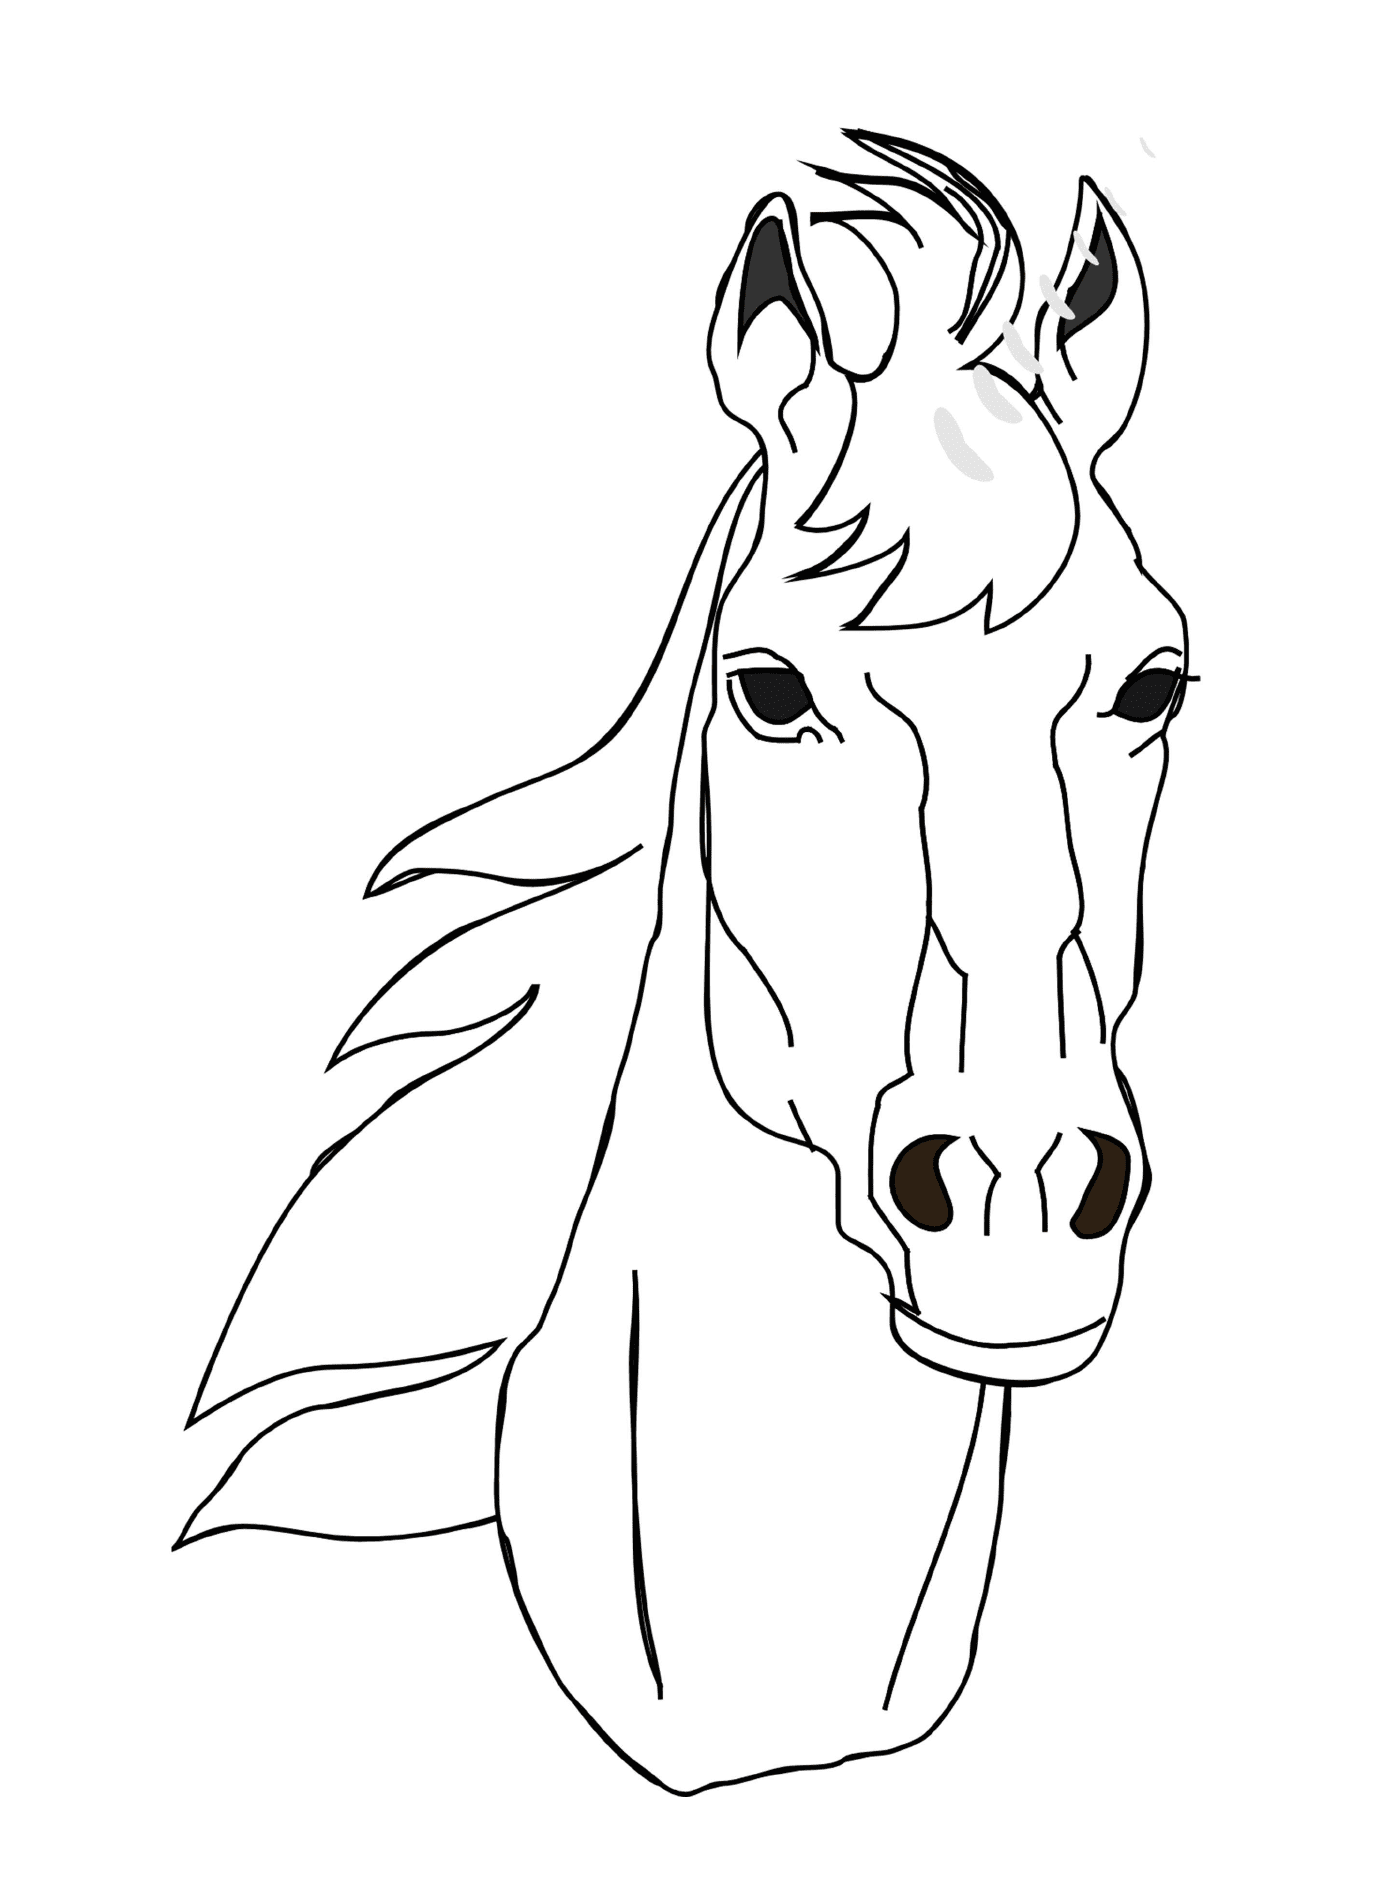  Horse face portrait 